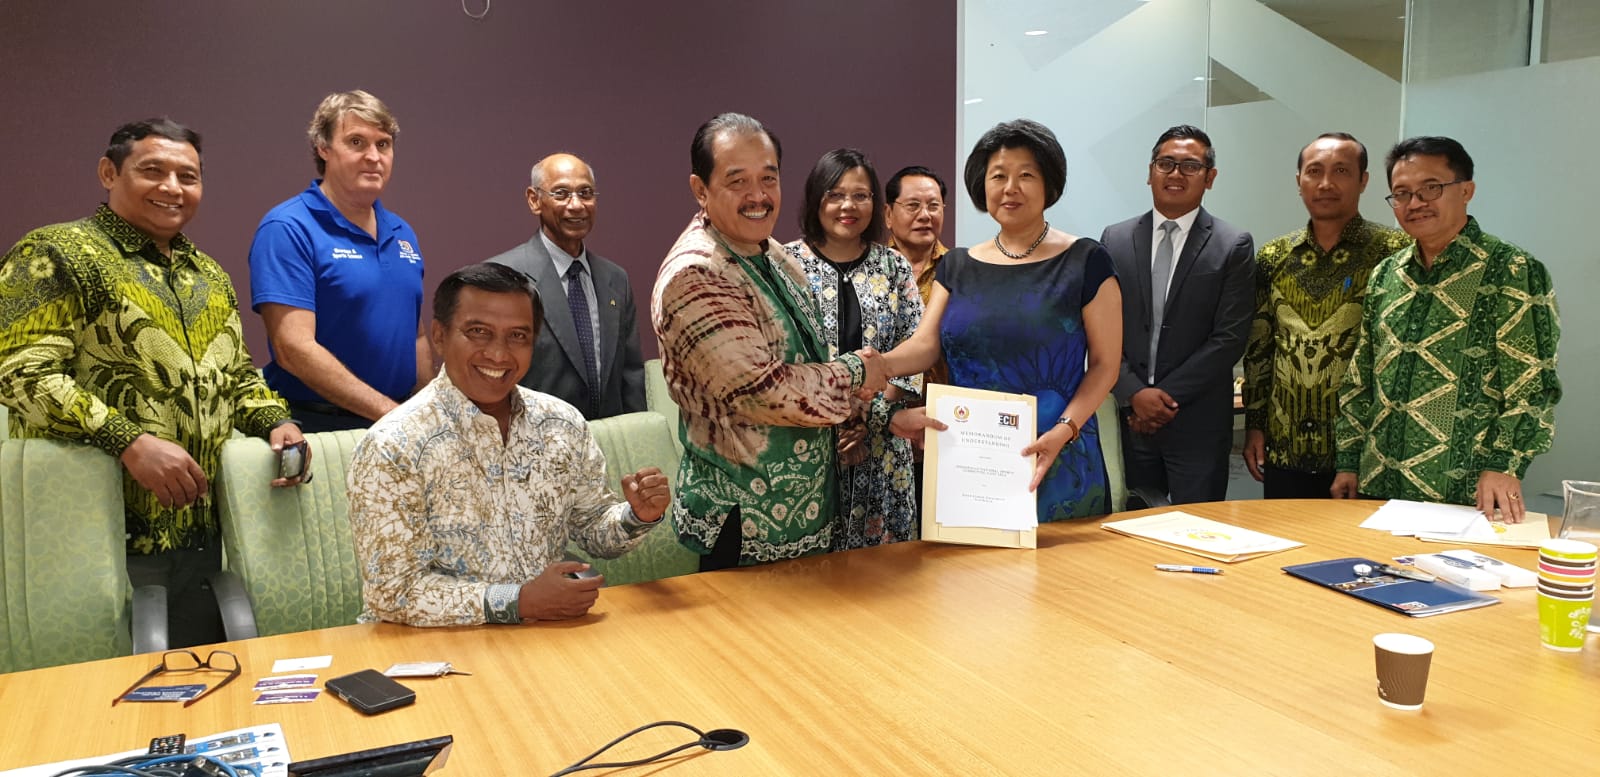 Ketua KONI Jatim, Erlangga Satriagung, menandatangani kesepakatan bersama Australia Barat untuk program pengembangan pembinaan olahraga. (Foto: Dok. KONI Jatim)